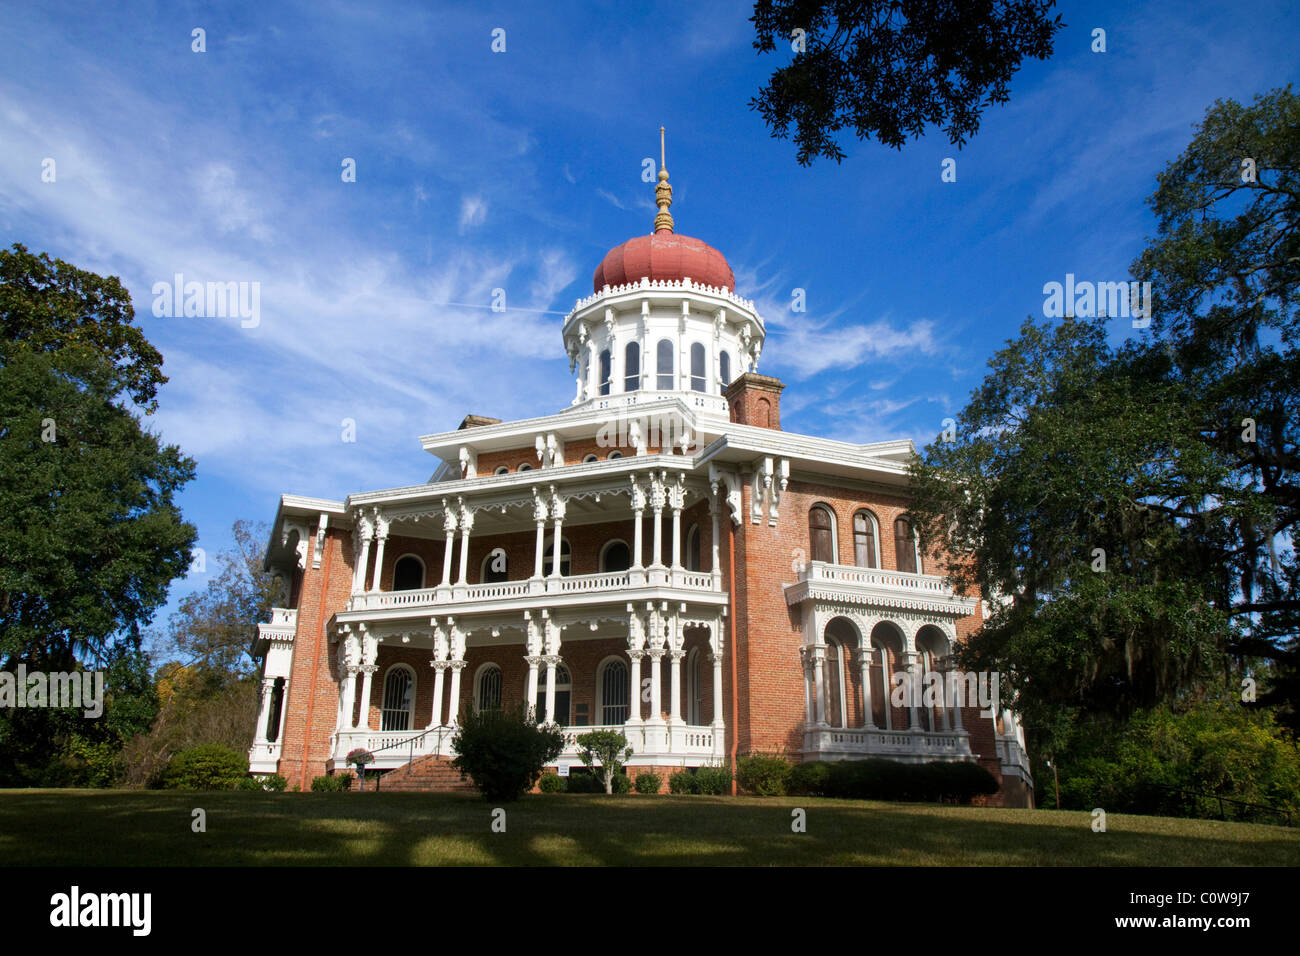 Longwood historischen antebellum achteckige Villa befindet sich in Natchez, Mississippi, Vereinigte Staaten. Stockfoto